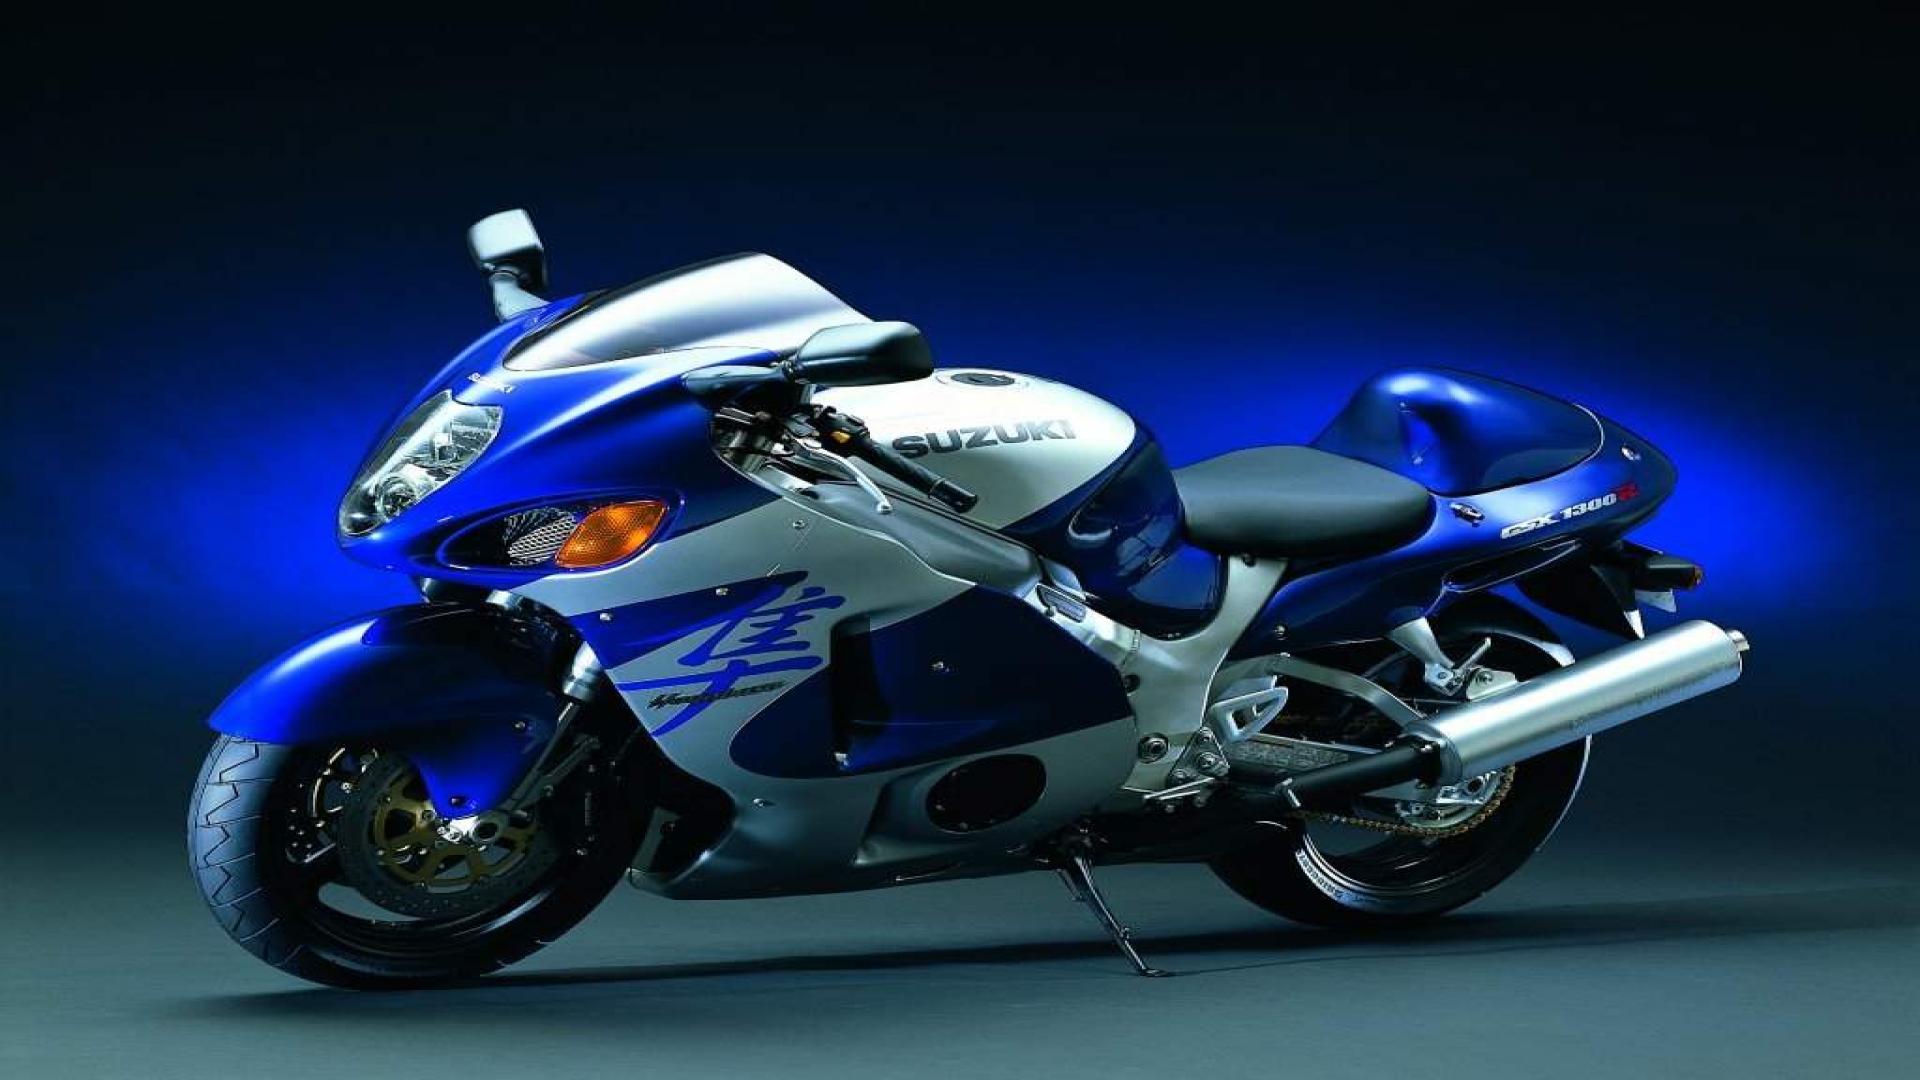 Suzuki Heavy Bike 1080p Wallpapers 2013 - My Site